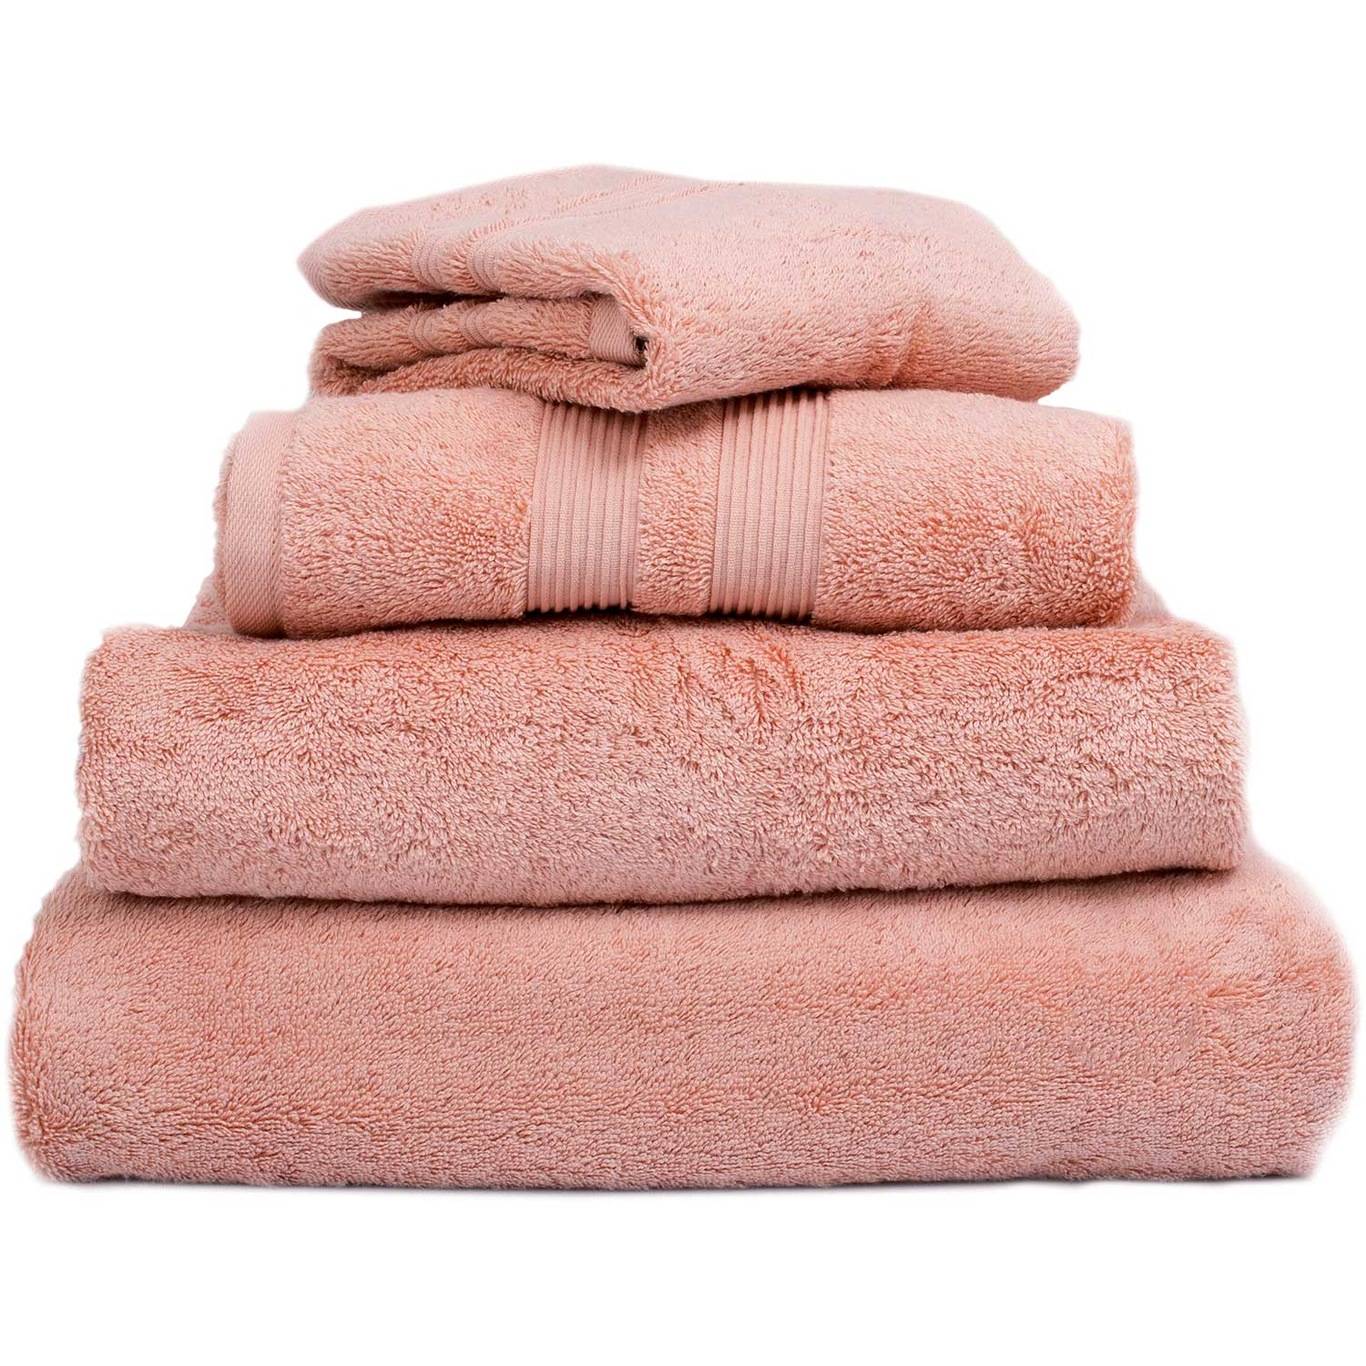 Fontana EKO Towel Pink, 100x150 cm